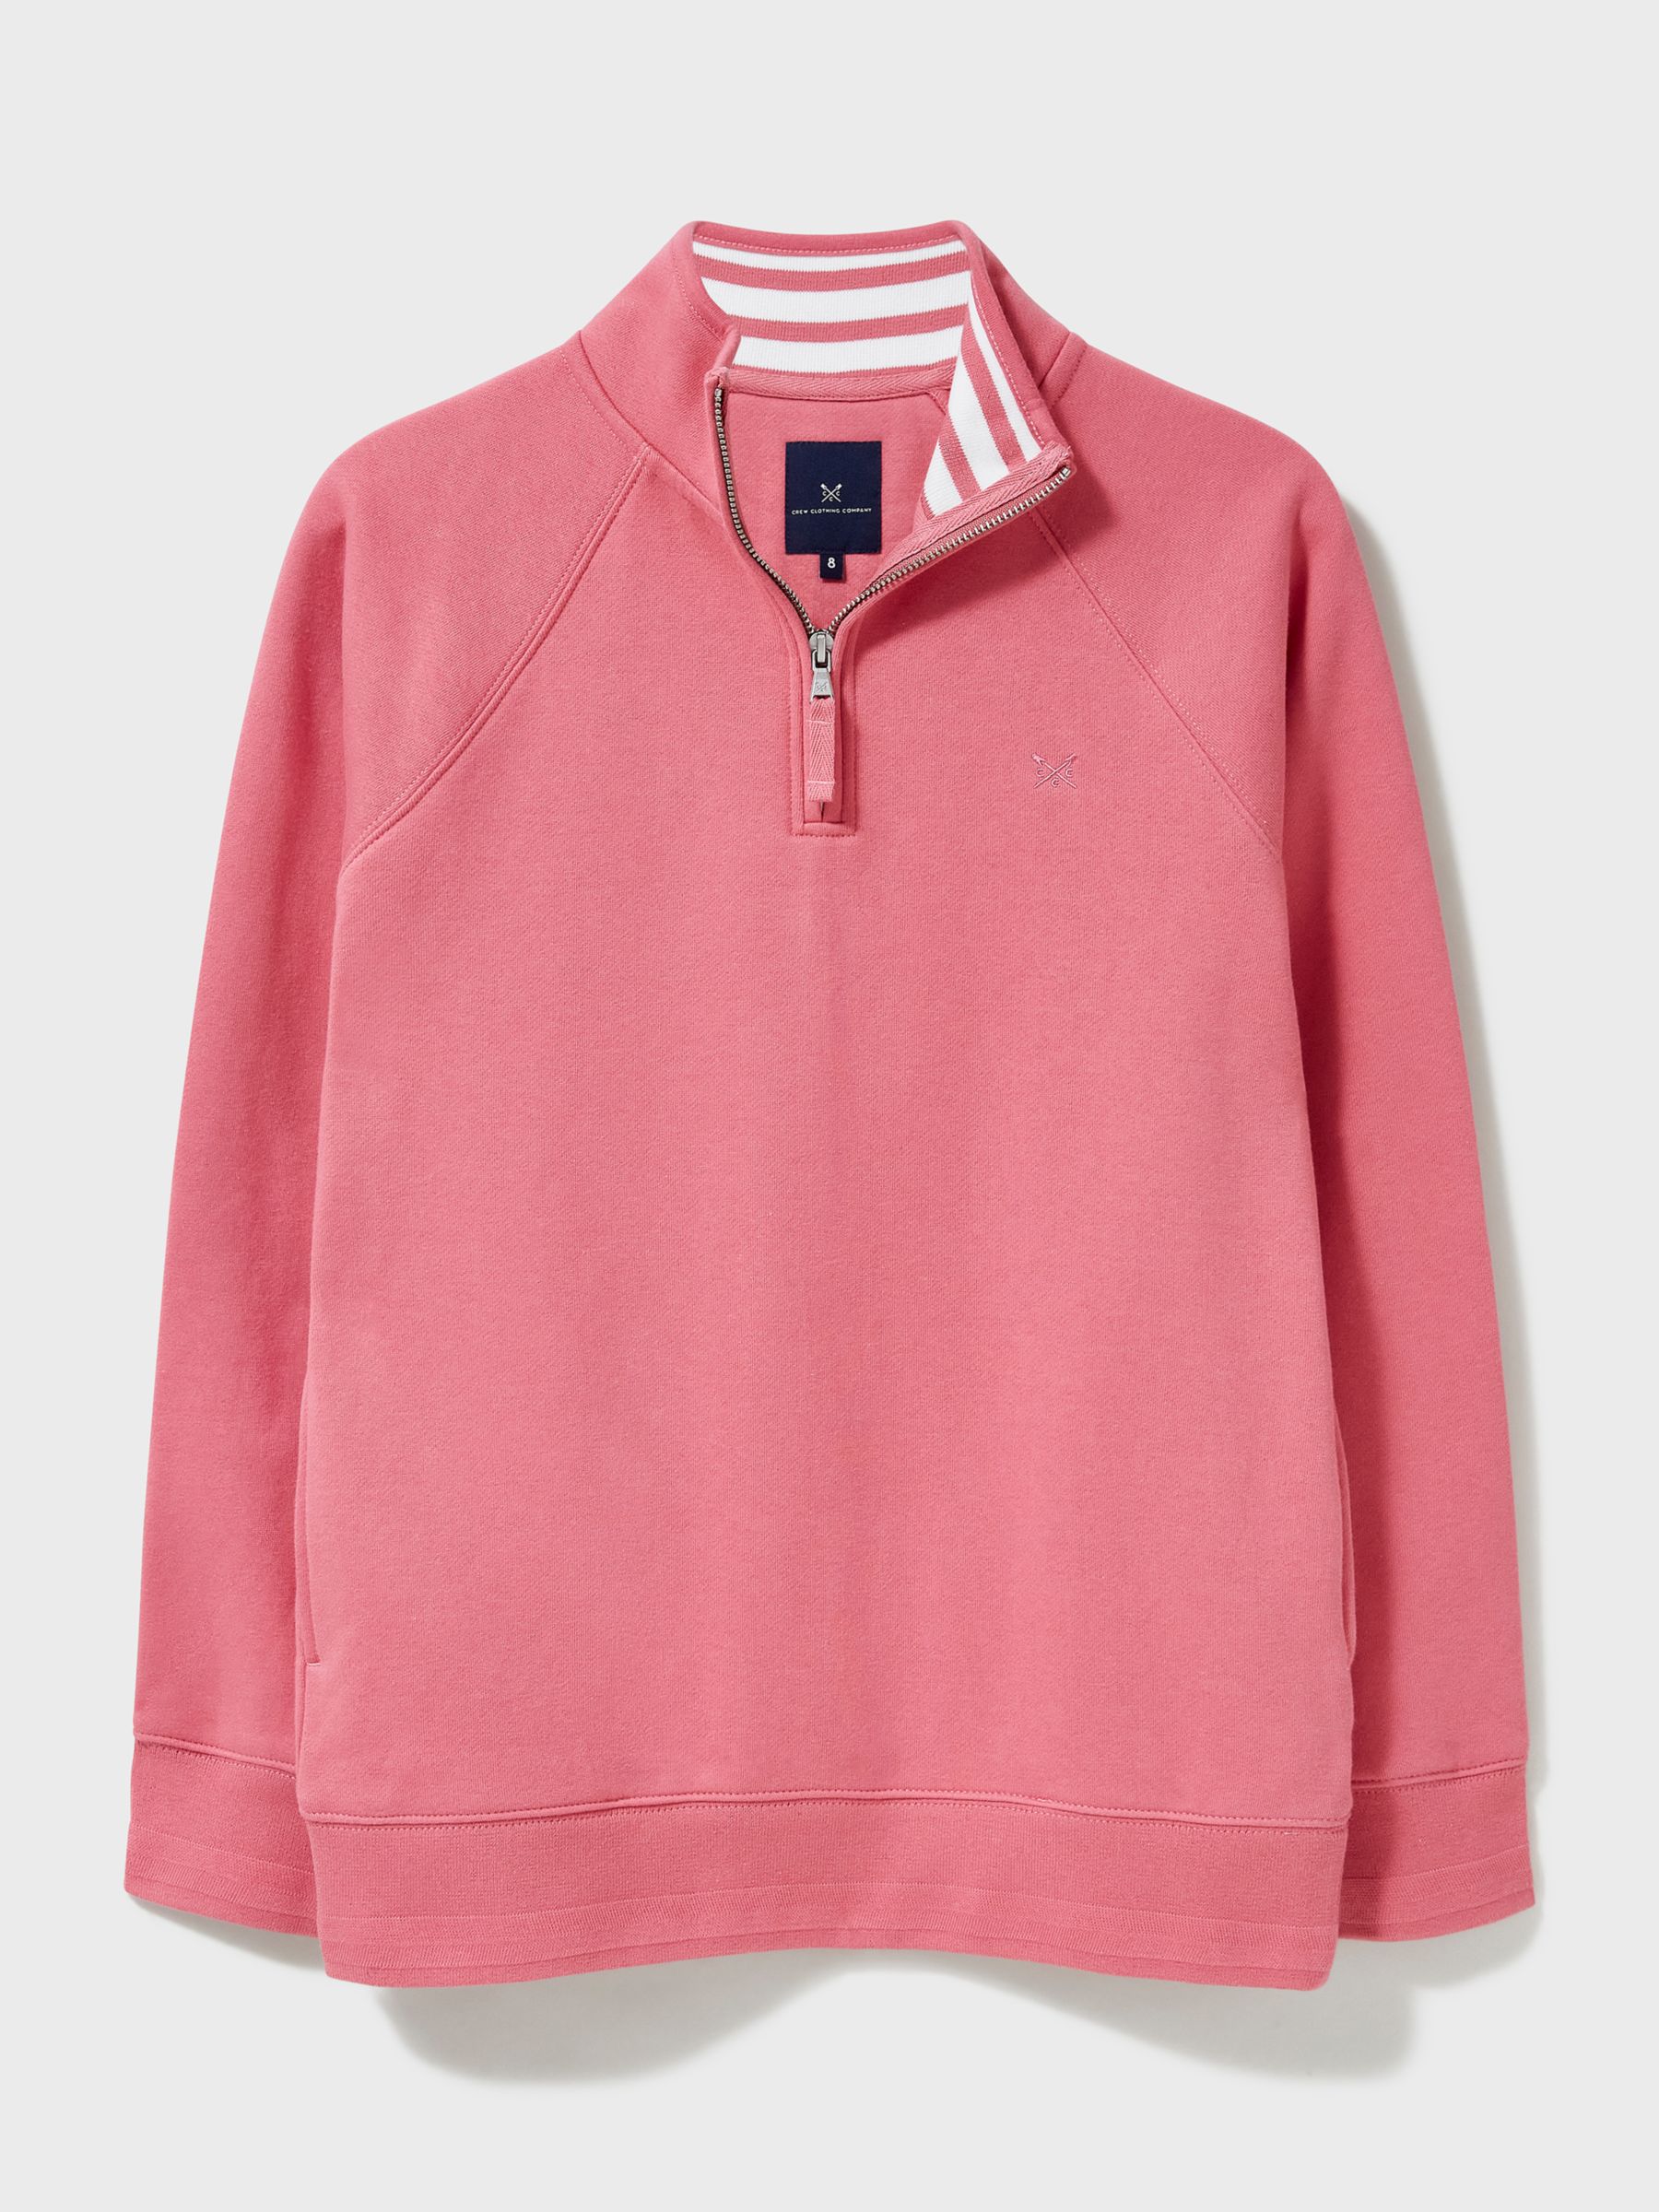 Crew Clothing Half Zip Sweatshirt, Rose Pink, 10